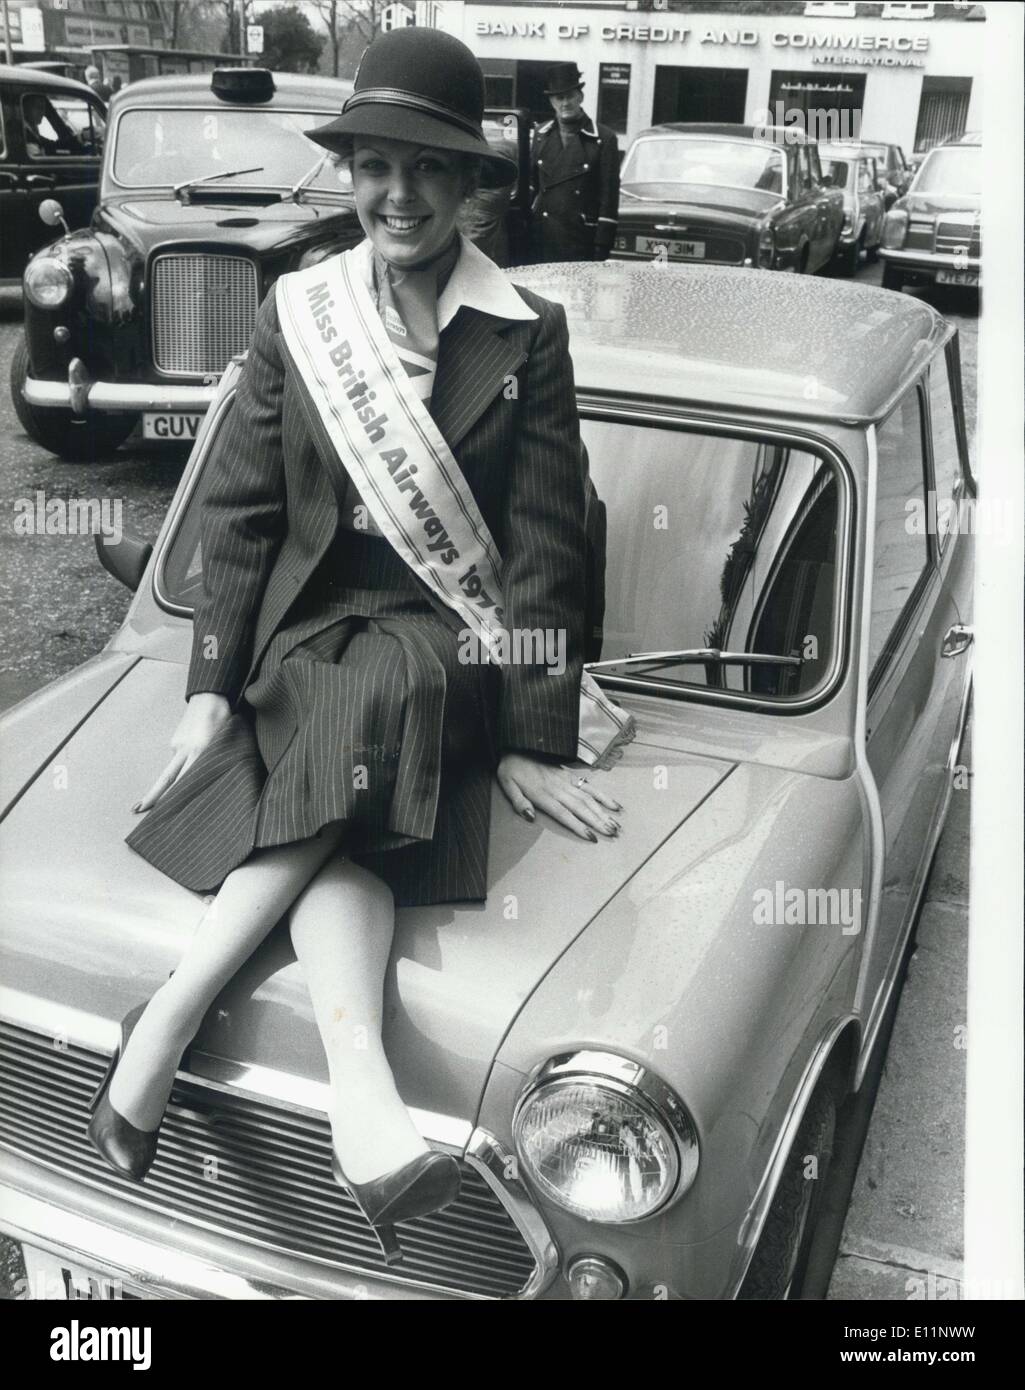 24 avril 1979 - Kim Turner Mlle British Airways 1979 : Kim Turner,23, qui vient de Clapham Park, Londres, et qui a rejoint l'an dernier, British Airways a remporté le titre de 'Miss 1979 British Airways a tenu à l'hôtel Hilton Park Lane,aujourd'hui. Elle est hôtesse de l'air. Photo montre Kim Turner assis sur le capot de l'Austin Morris Mini 1000 qui a été l'un des prix qu'elle a gagné. Banque D'Images